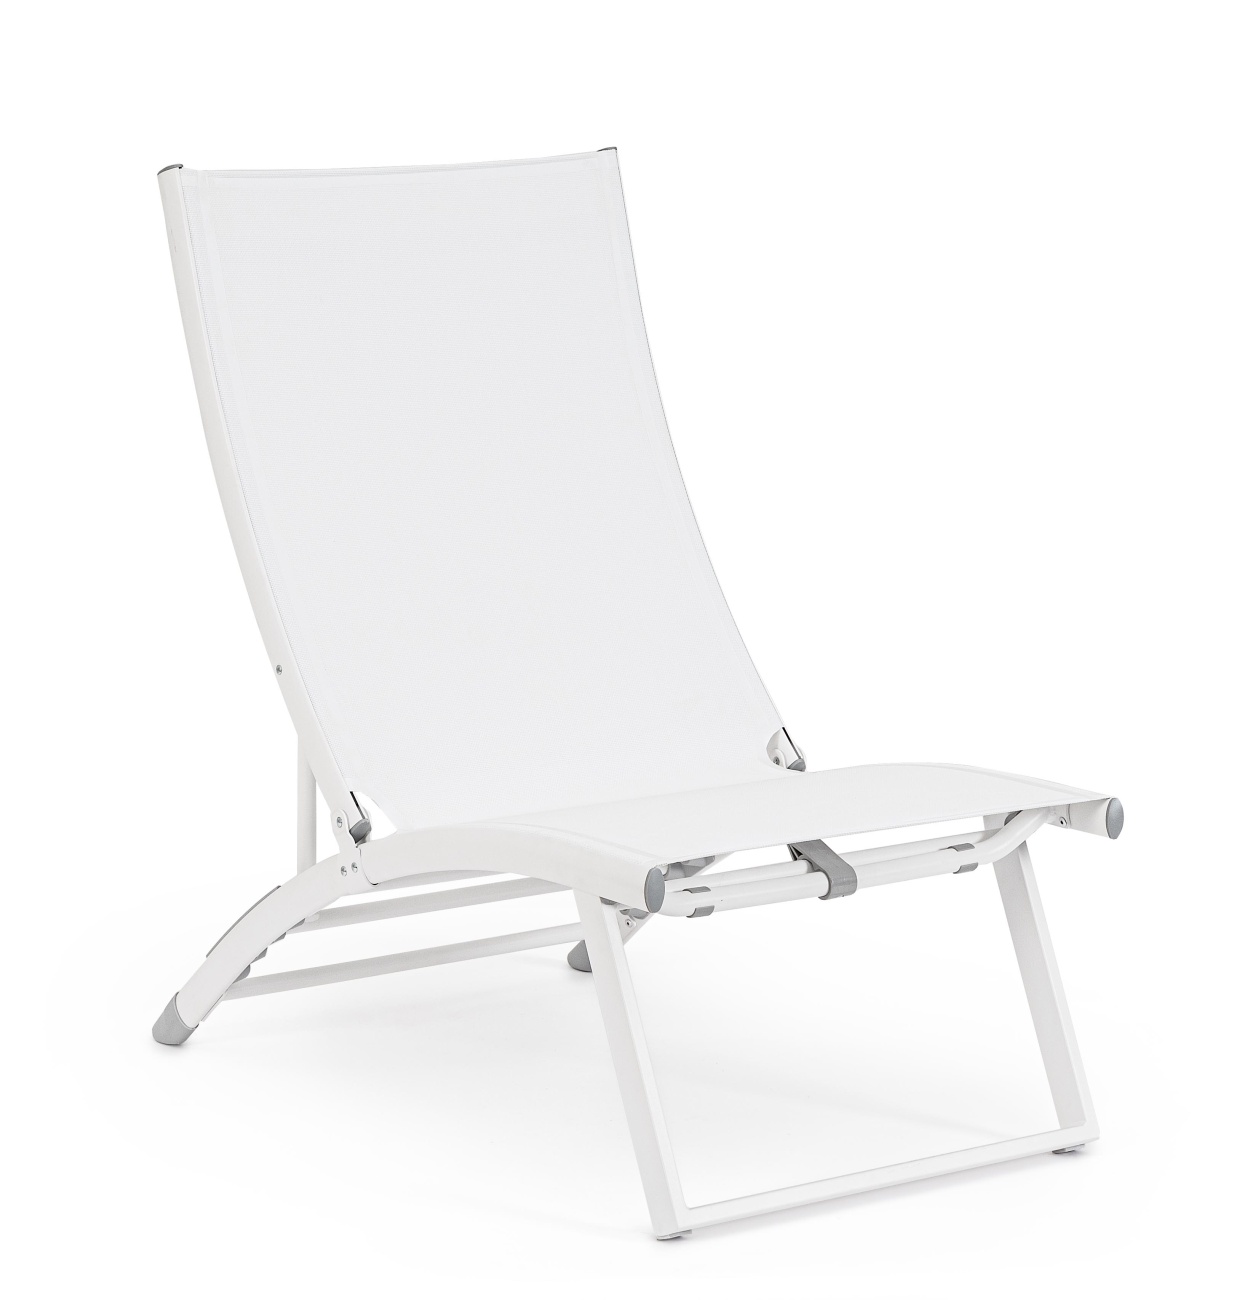 Der Loungesessel Taylor überzeugt mit seinem modernen Design. Gefertigt wurde er aus Textilene, welches einen weißen Farbton besitzt. Das Gestell ist aus Metall und hat eine weiße Farbe. Der Sessel ist klappbar.